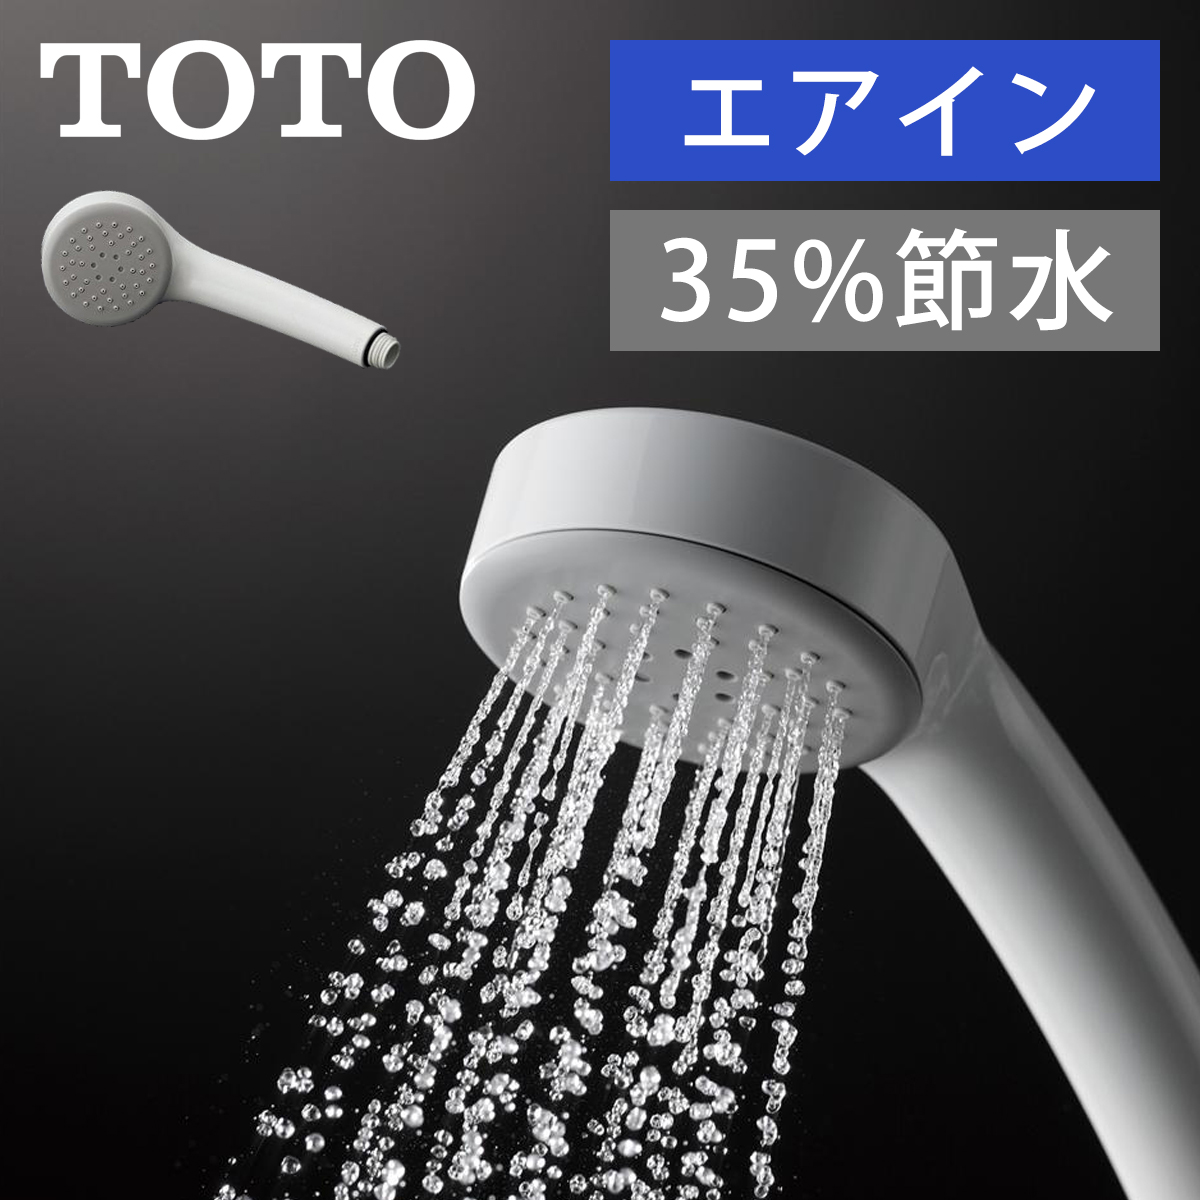 新商品!新型 TOTO製シャワーヘッドシャワーホース